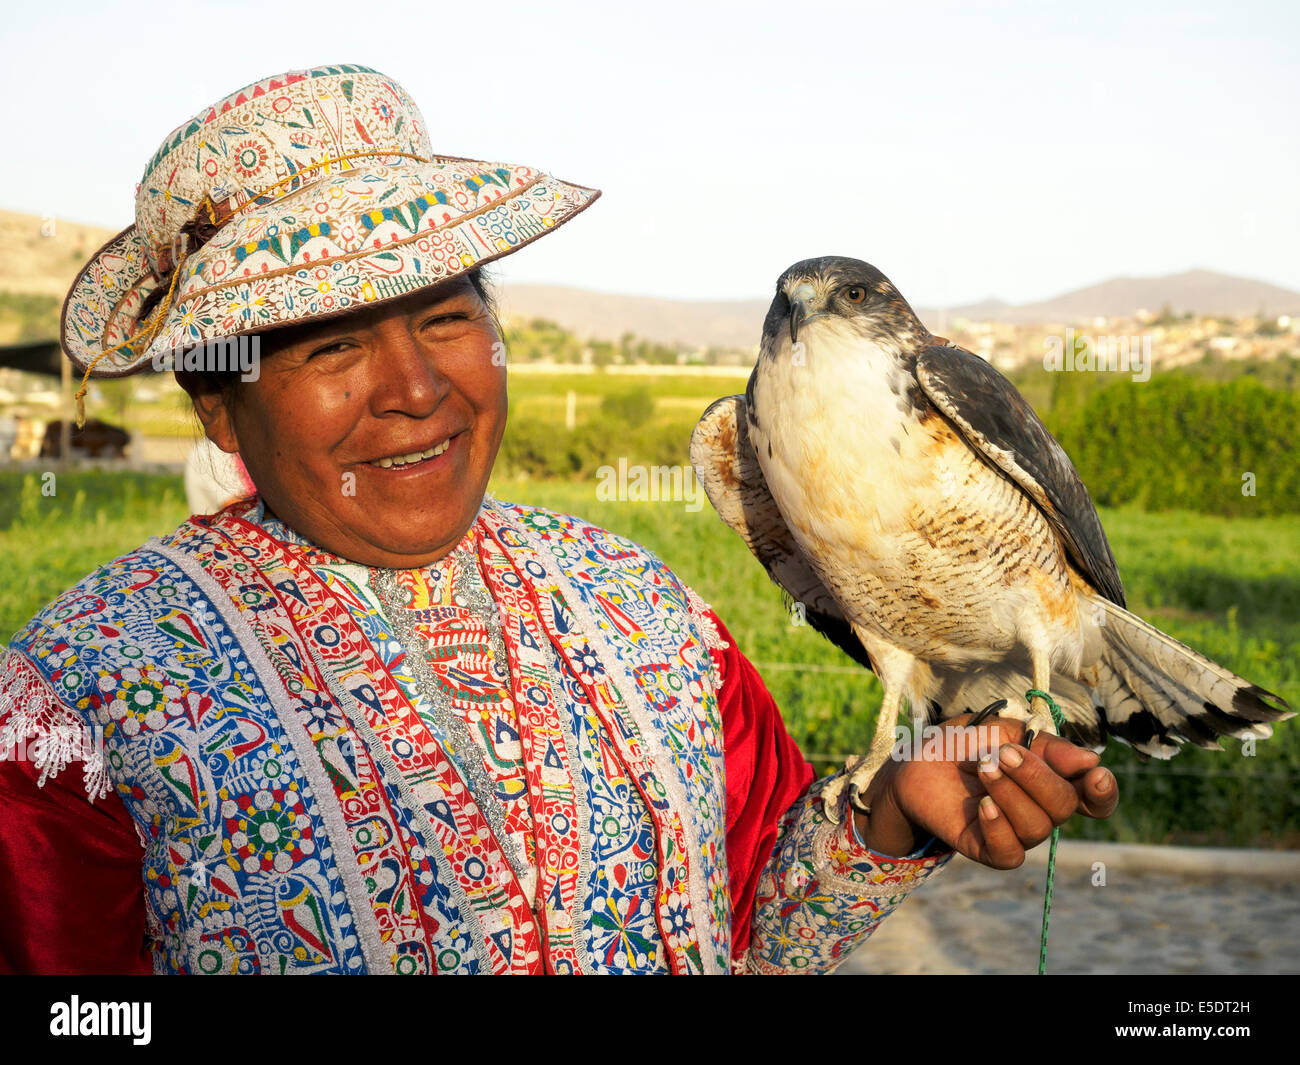 Peruanische Frau in traditioneller Kleidung mit ihrem Hawk - Arequipa, Peru Stockfoto